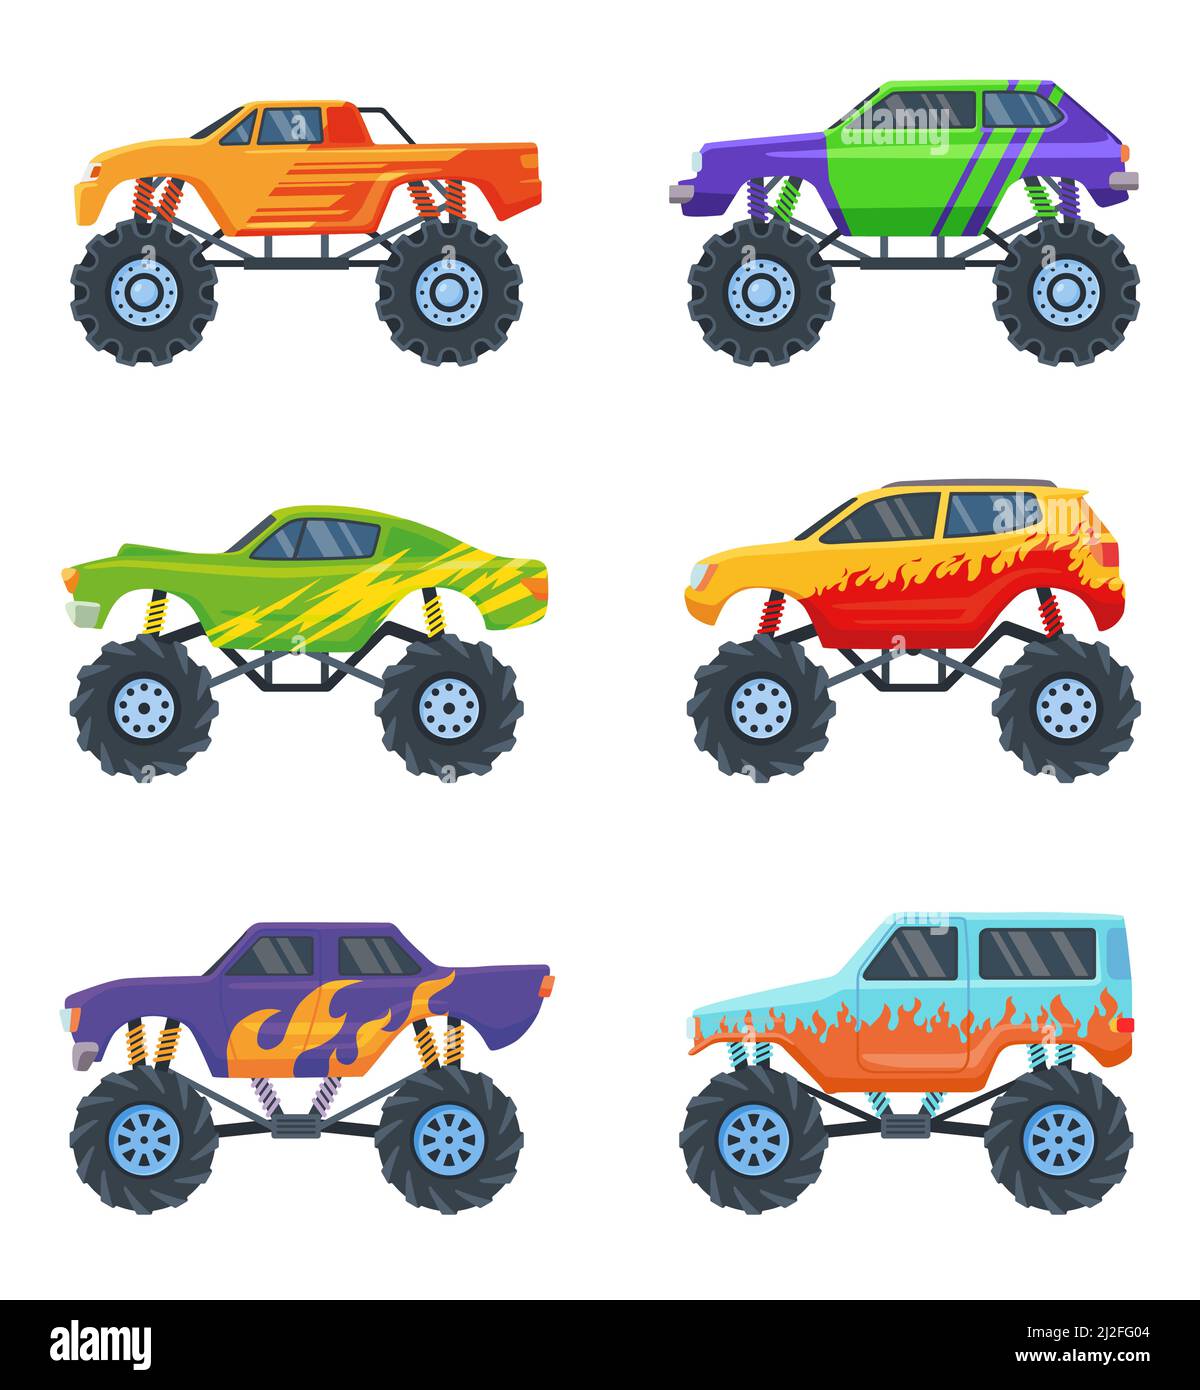 Monster Cars Set. Bunte Cartoon-Lastwagen auf großen Rädern, Spielzeug für Kinder isoliert auf weiß. Vektorgrafiken für Rennen, Wettbewerb, Automobil Stock Vektor